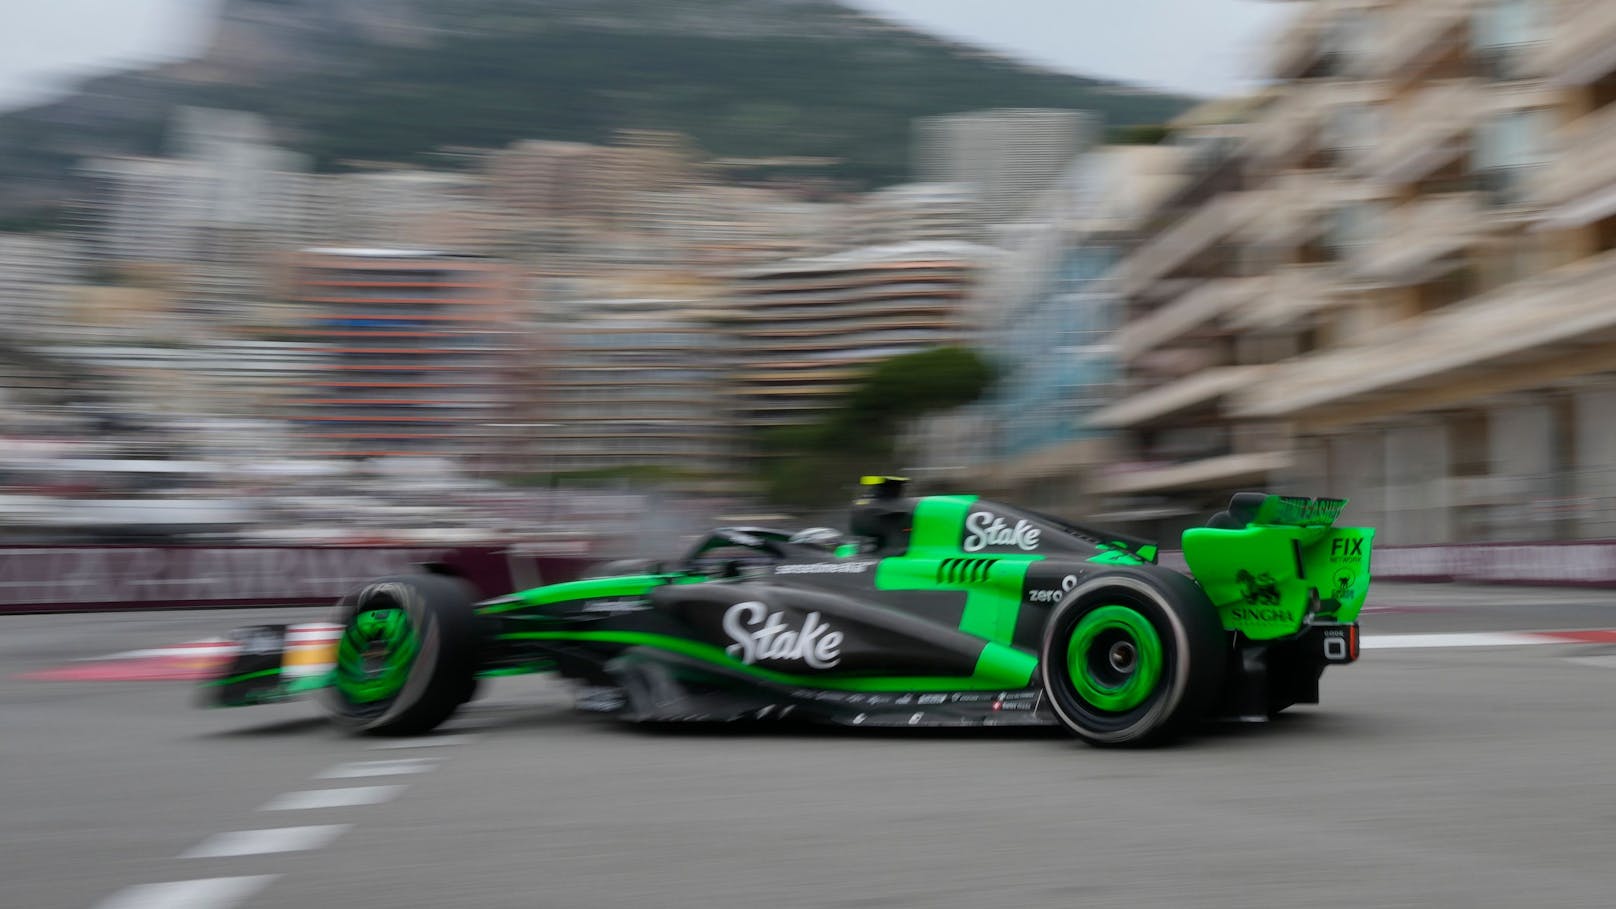 Unfall-Abbruch in Monaco, Hamilton fährt Bestzeit